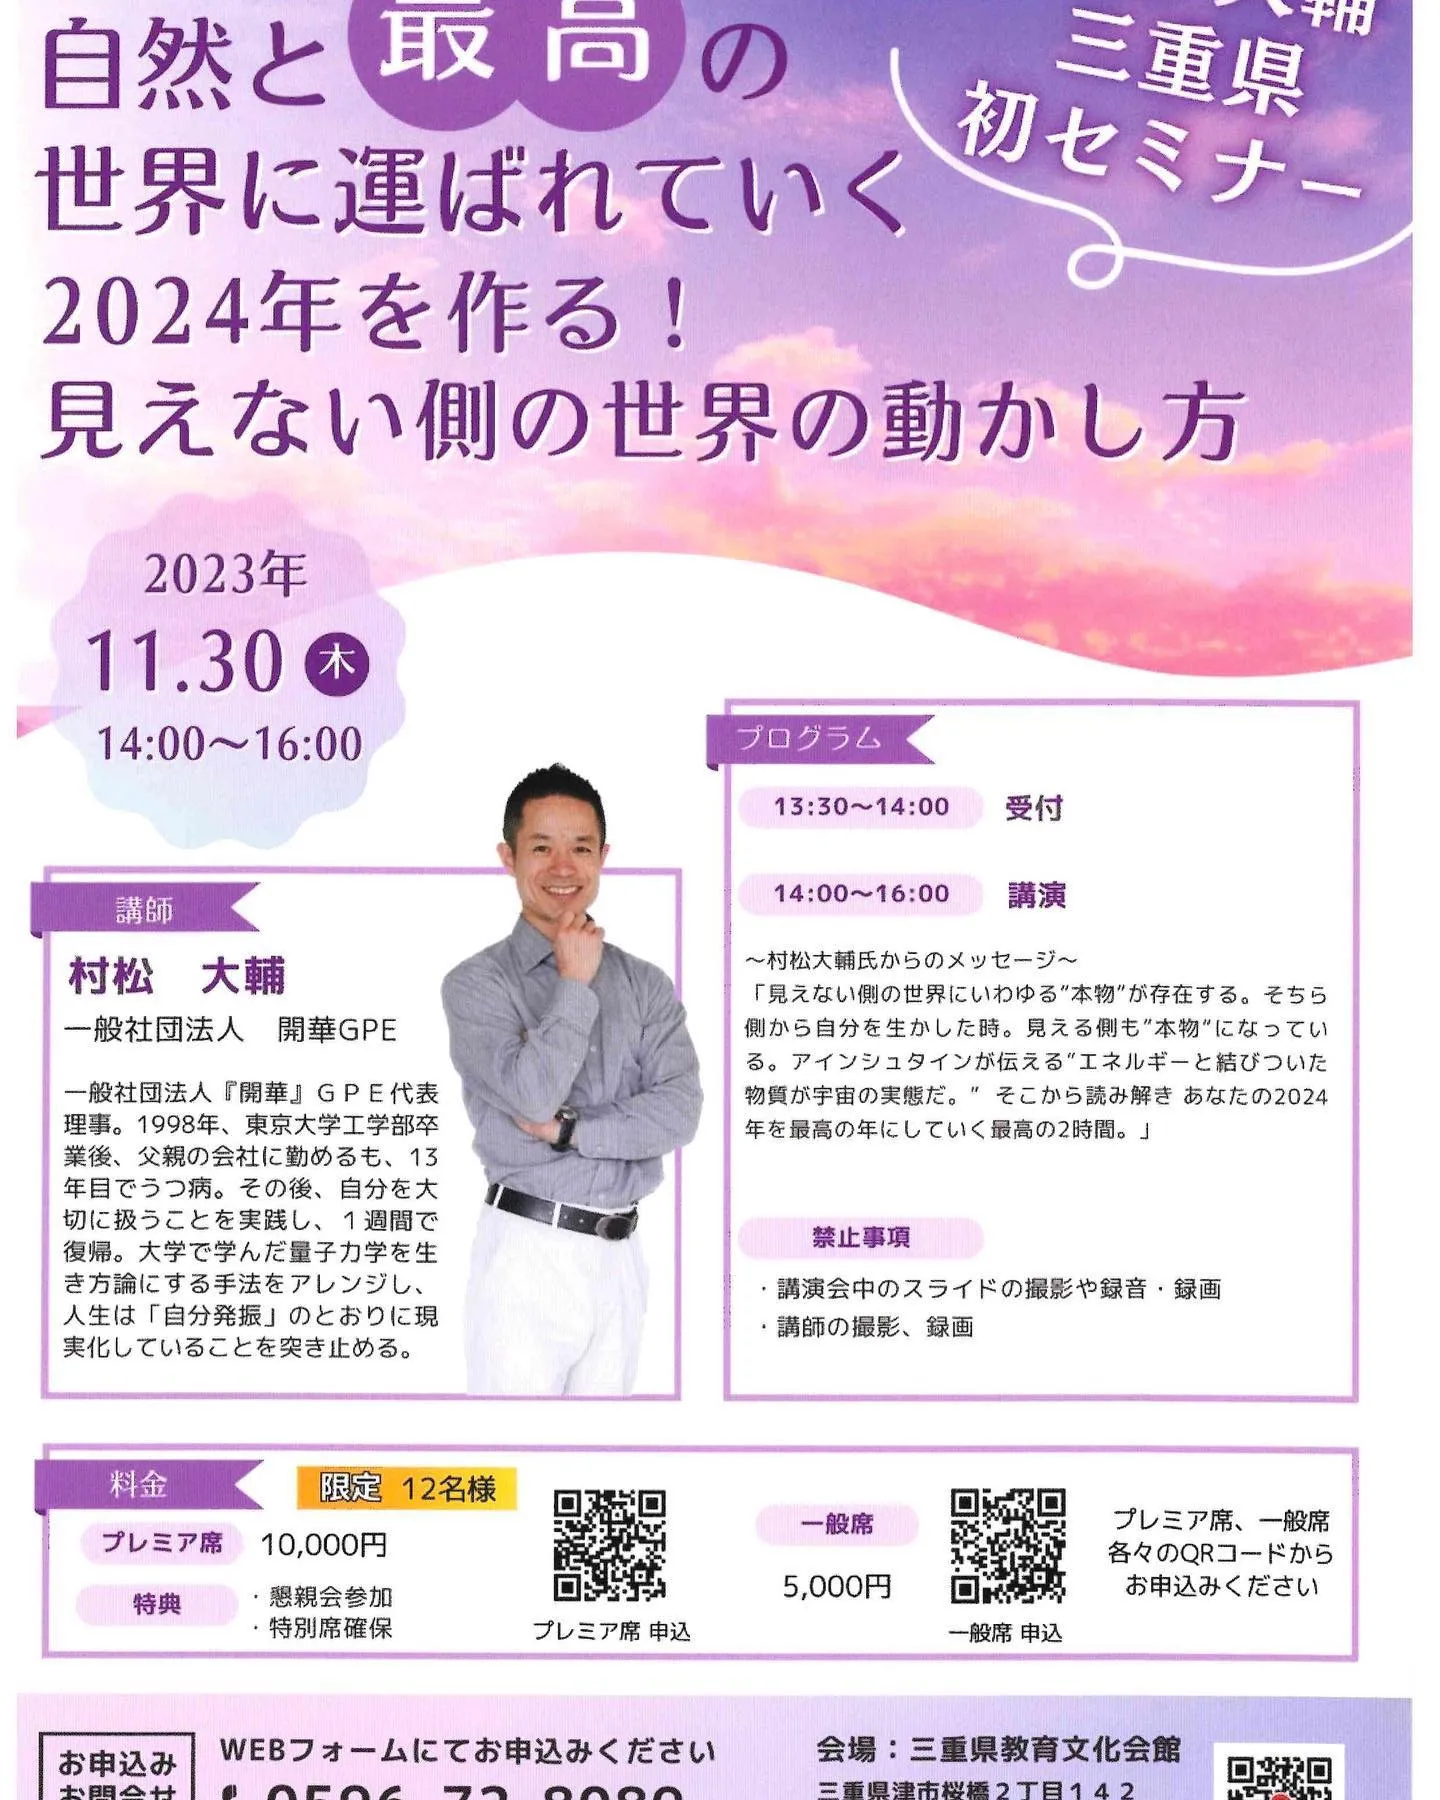 11月30日に、あの村松 大輔さんの講演会が三重県津市で行わ...